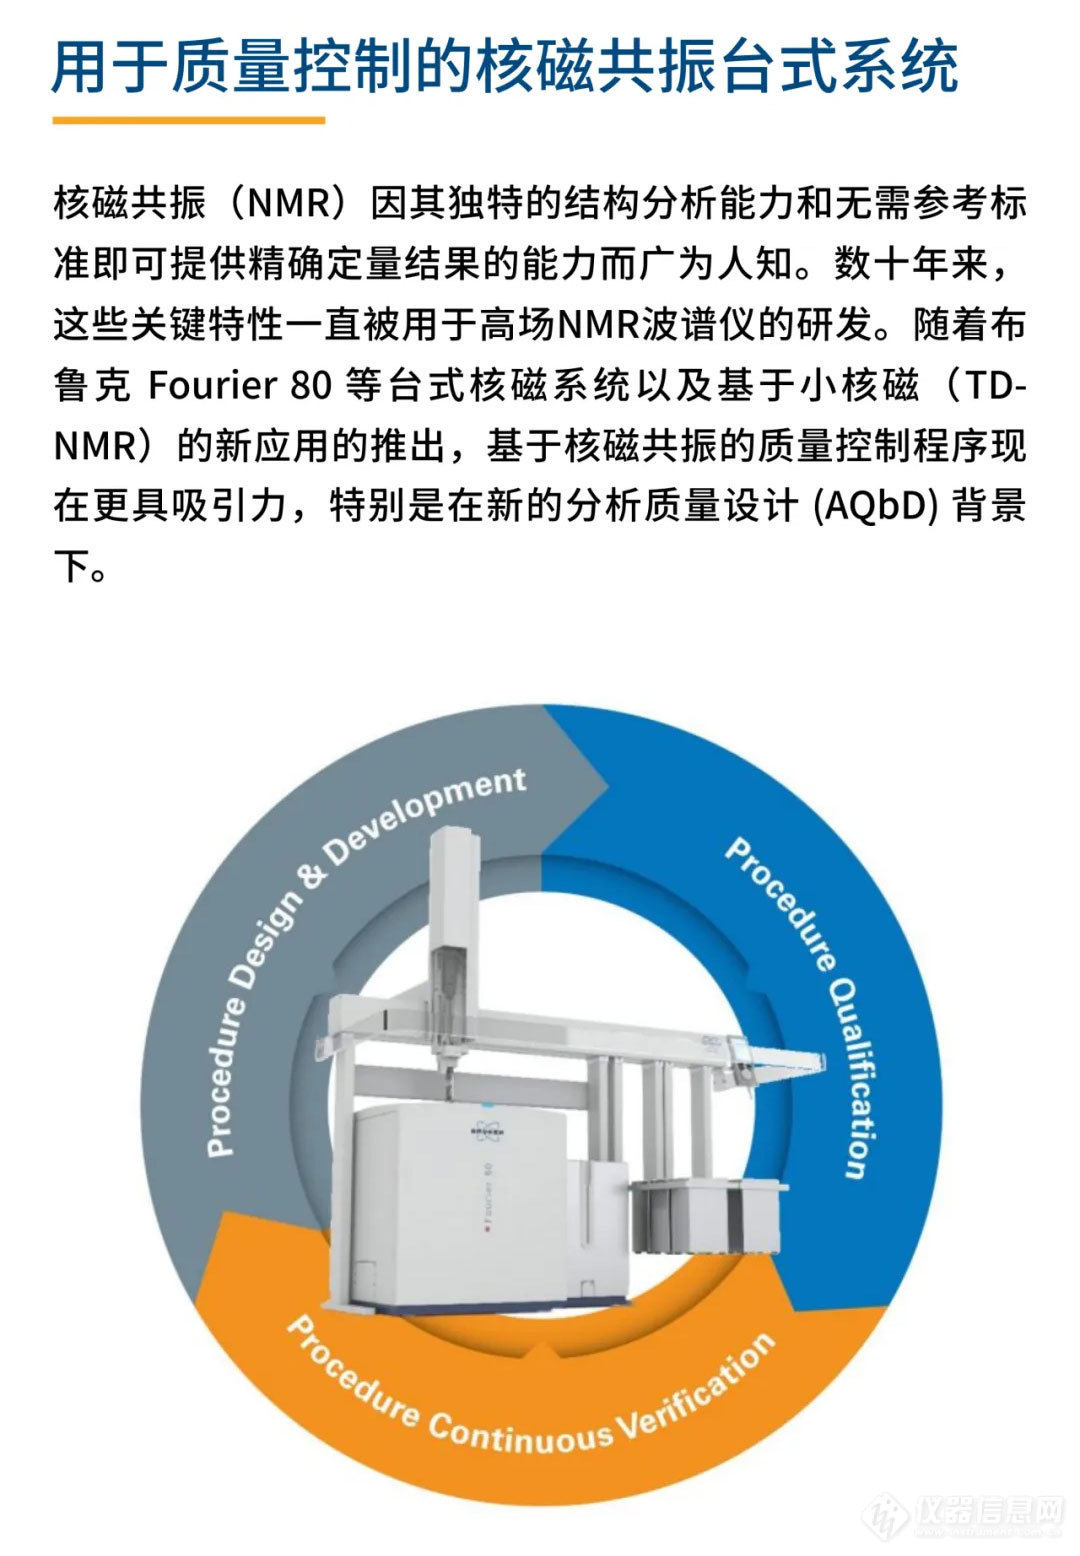 【产品介绍】用于质量控制的核磁共振台式系统